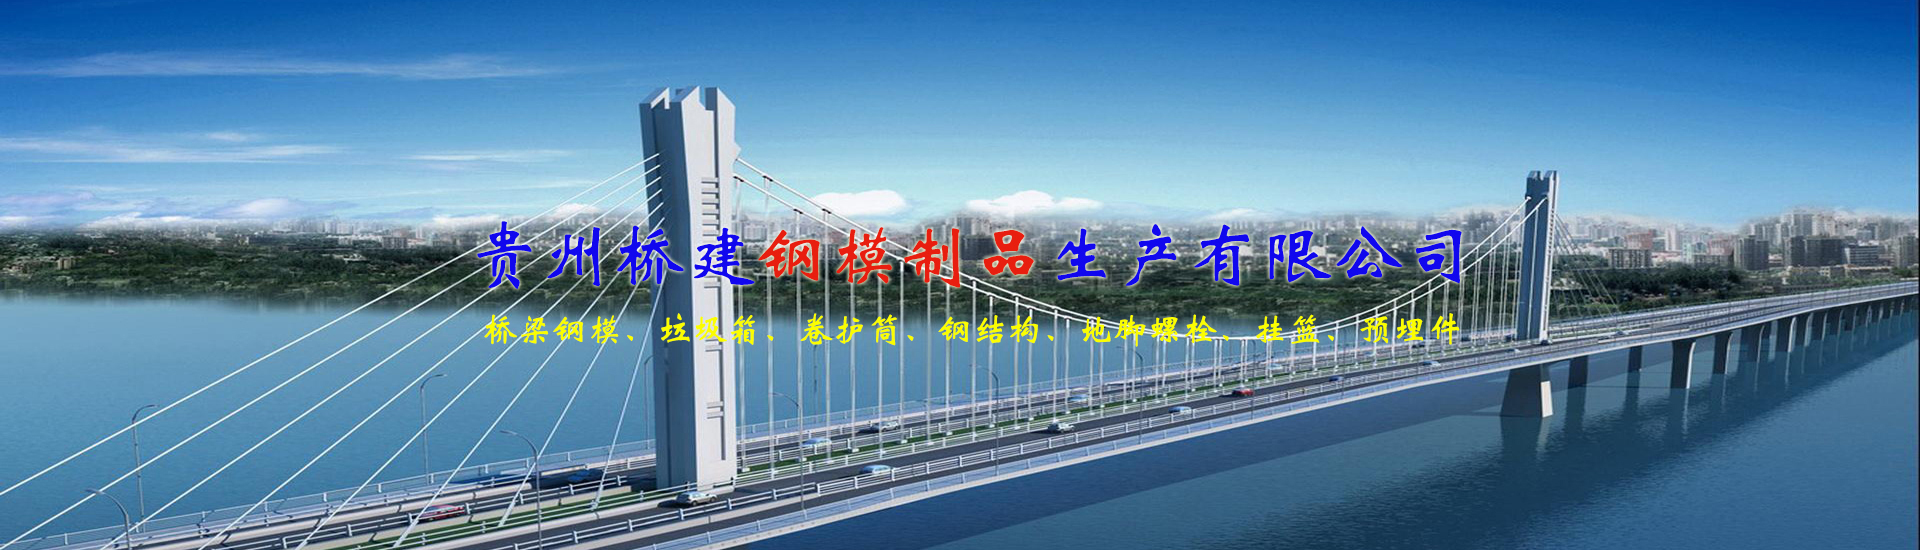 贵州桥建钢模制品生产有限公司【官网】